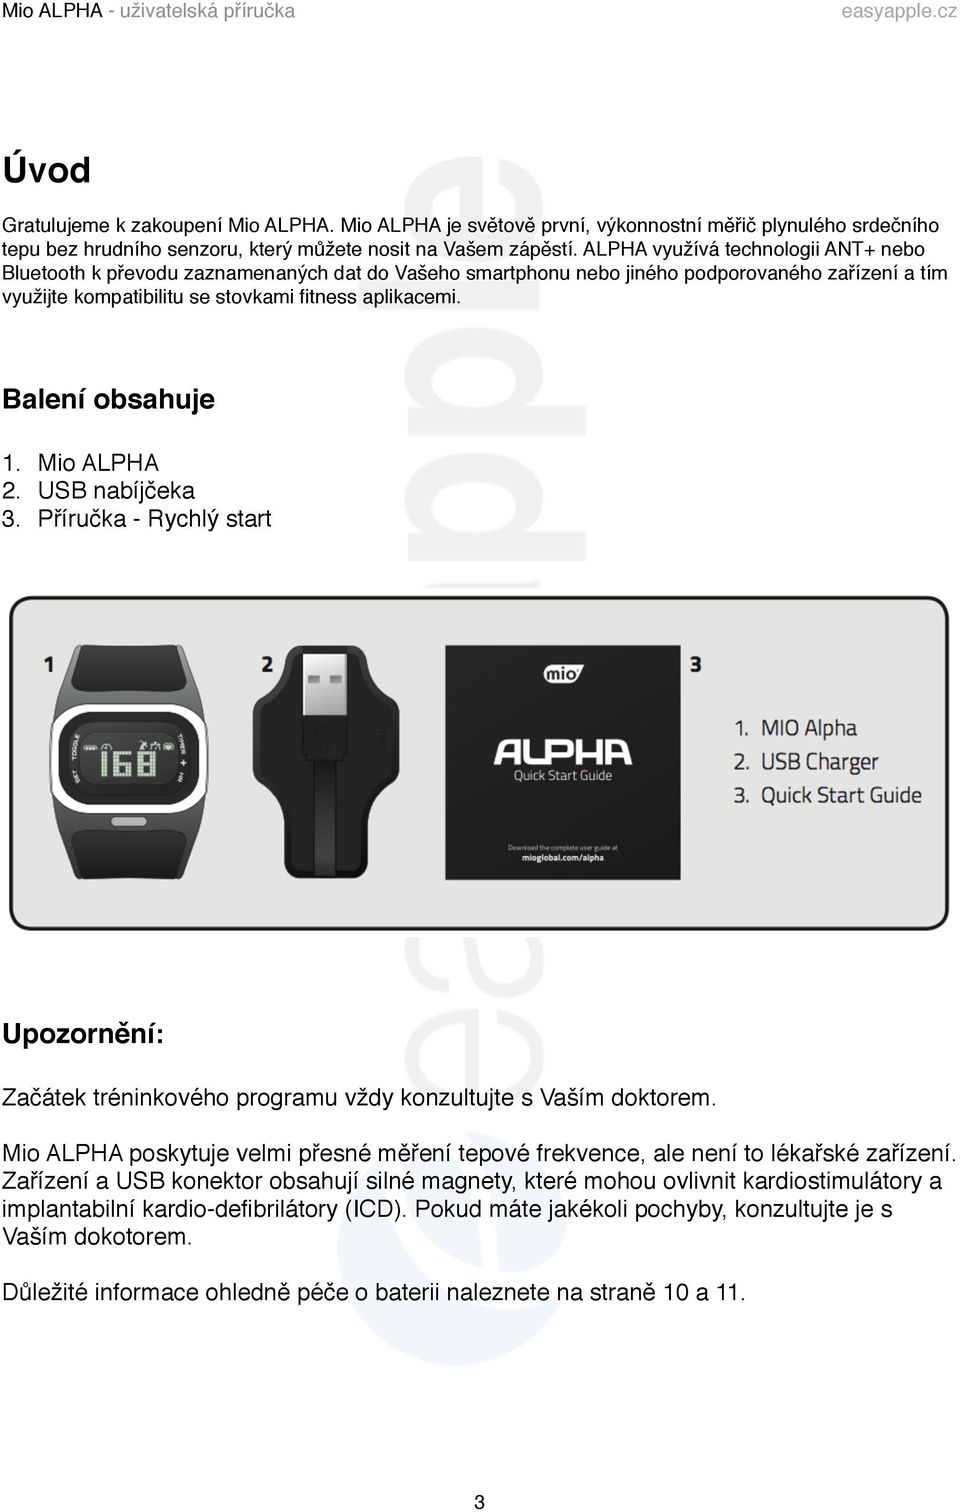 ALPHA využívá technologii ANT+ nebo Bluetooth k převodu zaznamenaných dat do Vašeho smartphonu nebo jiného podporovaného zařízení a tím využijte kompatibilitu se stovkami fitness aplikacemi.